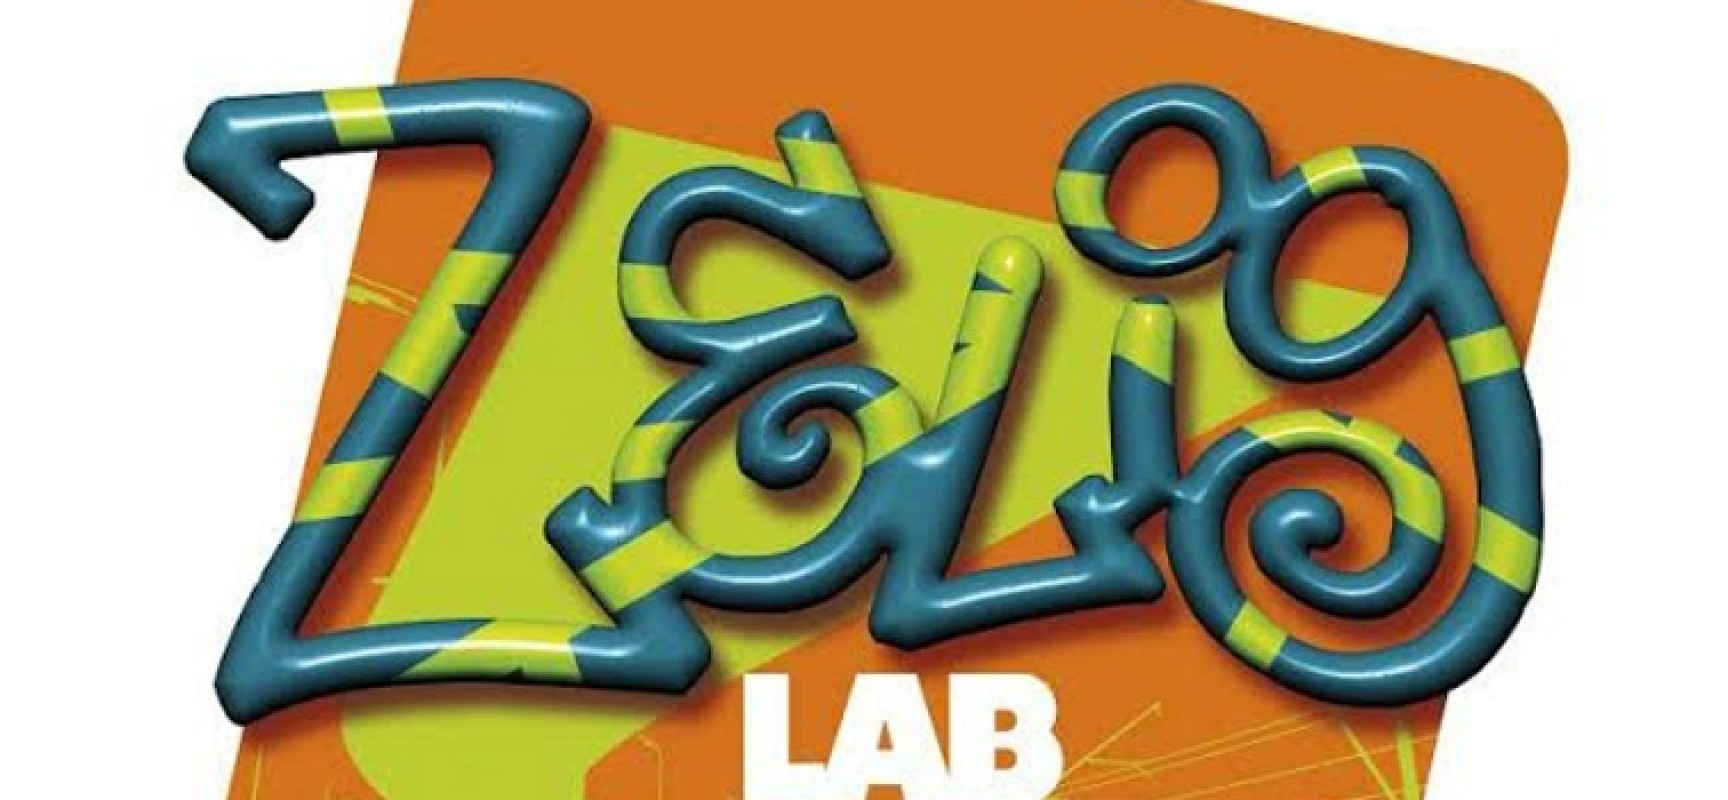 Zelig Lab Puglia, il nono appuntamento all’Arci Open Source / Ecco chi si esibirà